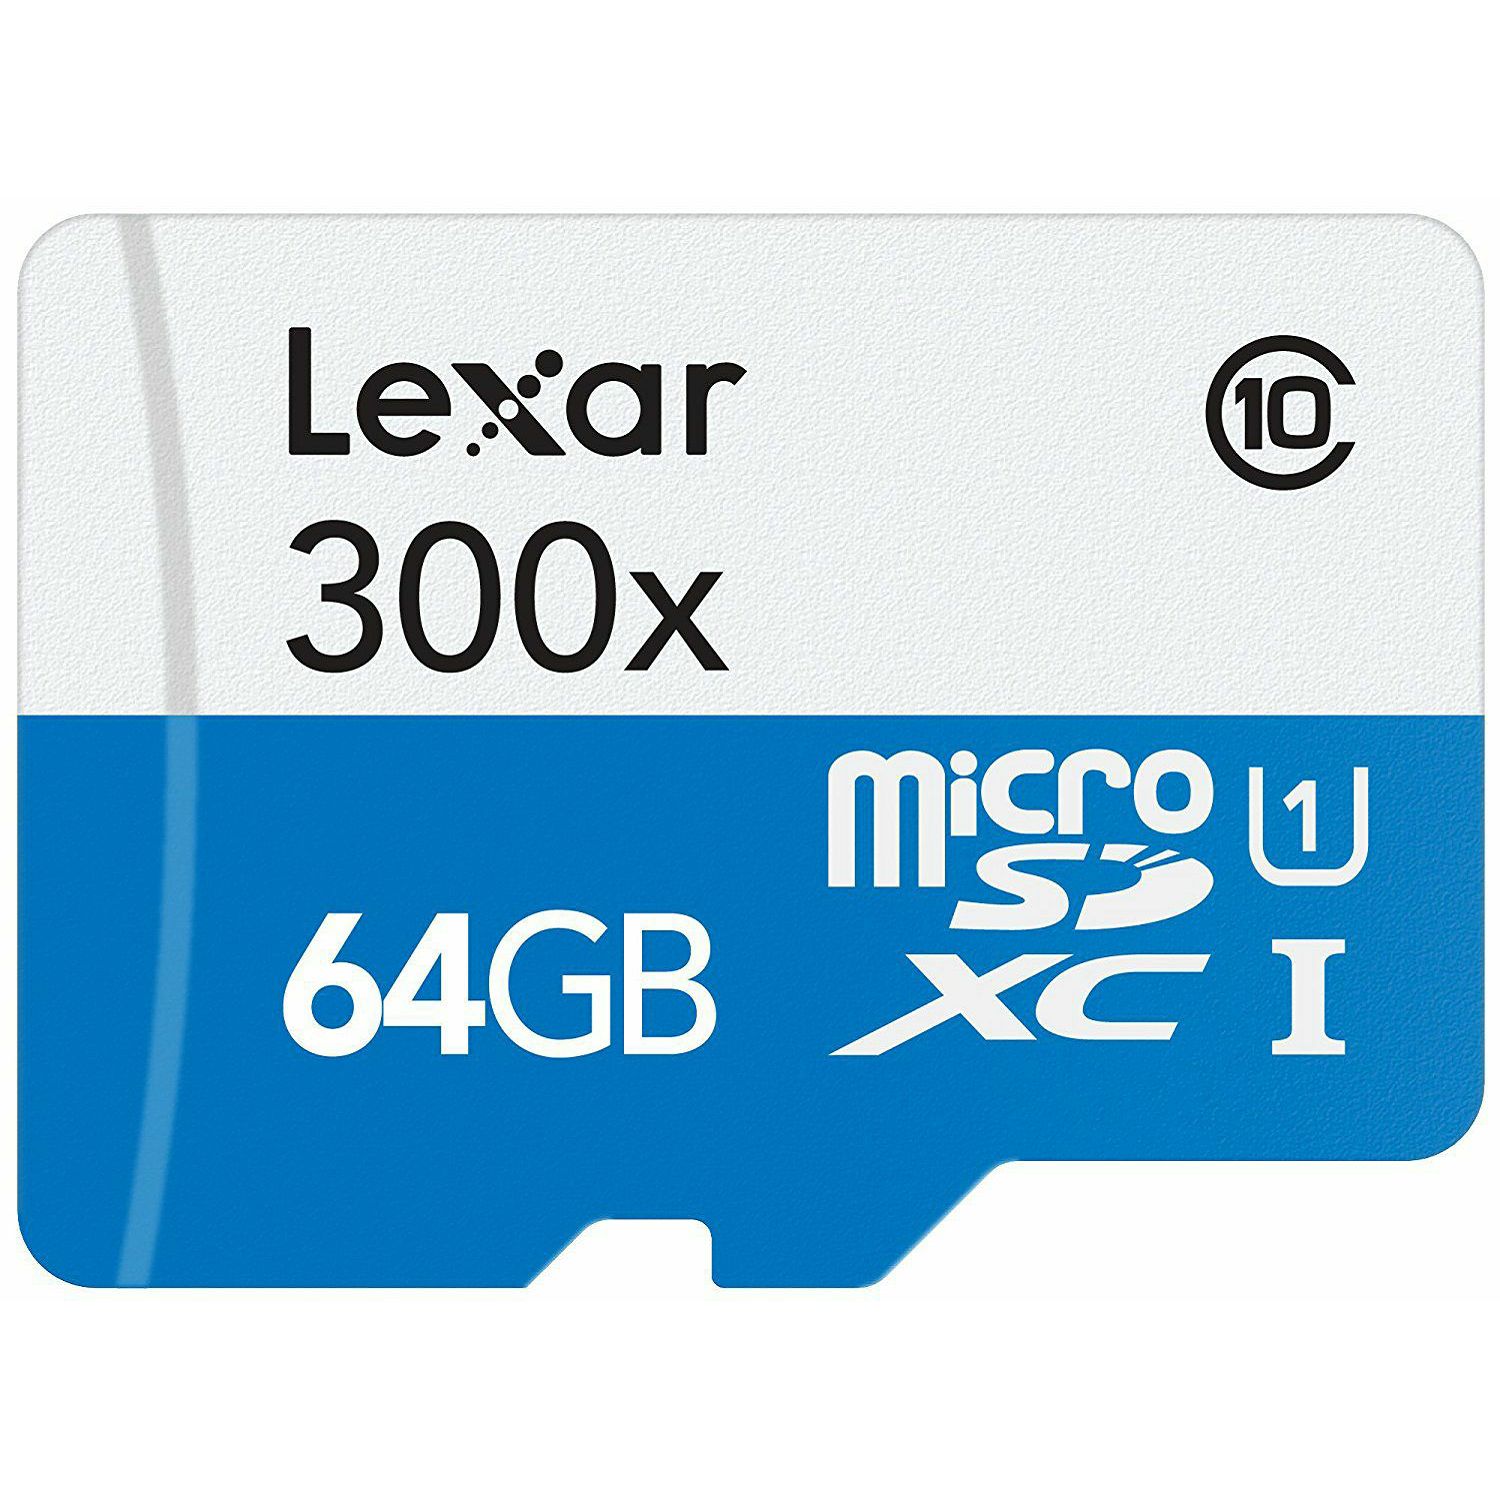 Lexar microSDXC 64GB 300x 45MB/s Class 10 High Speed memorijska kartica sa adapterom LSDMI64GB1EU300A